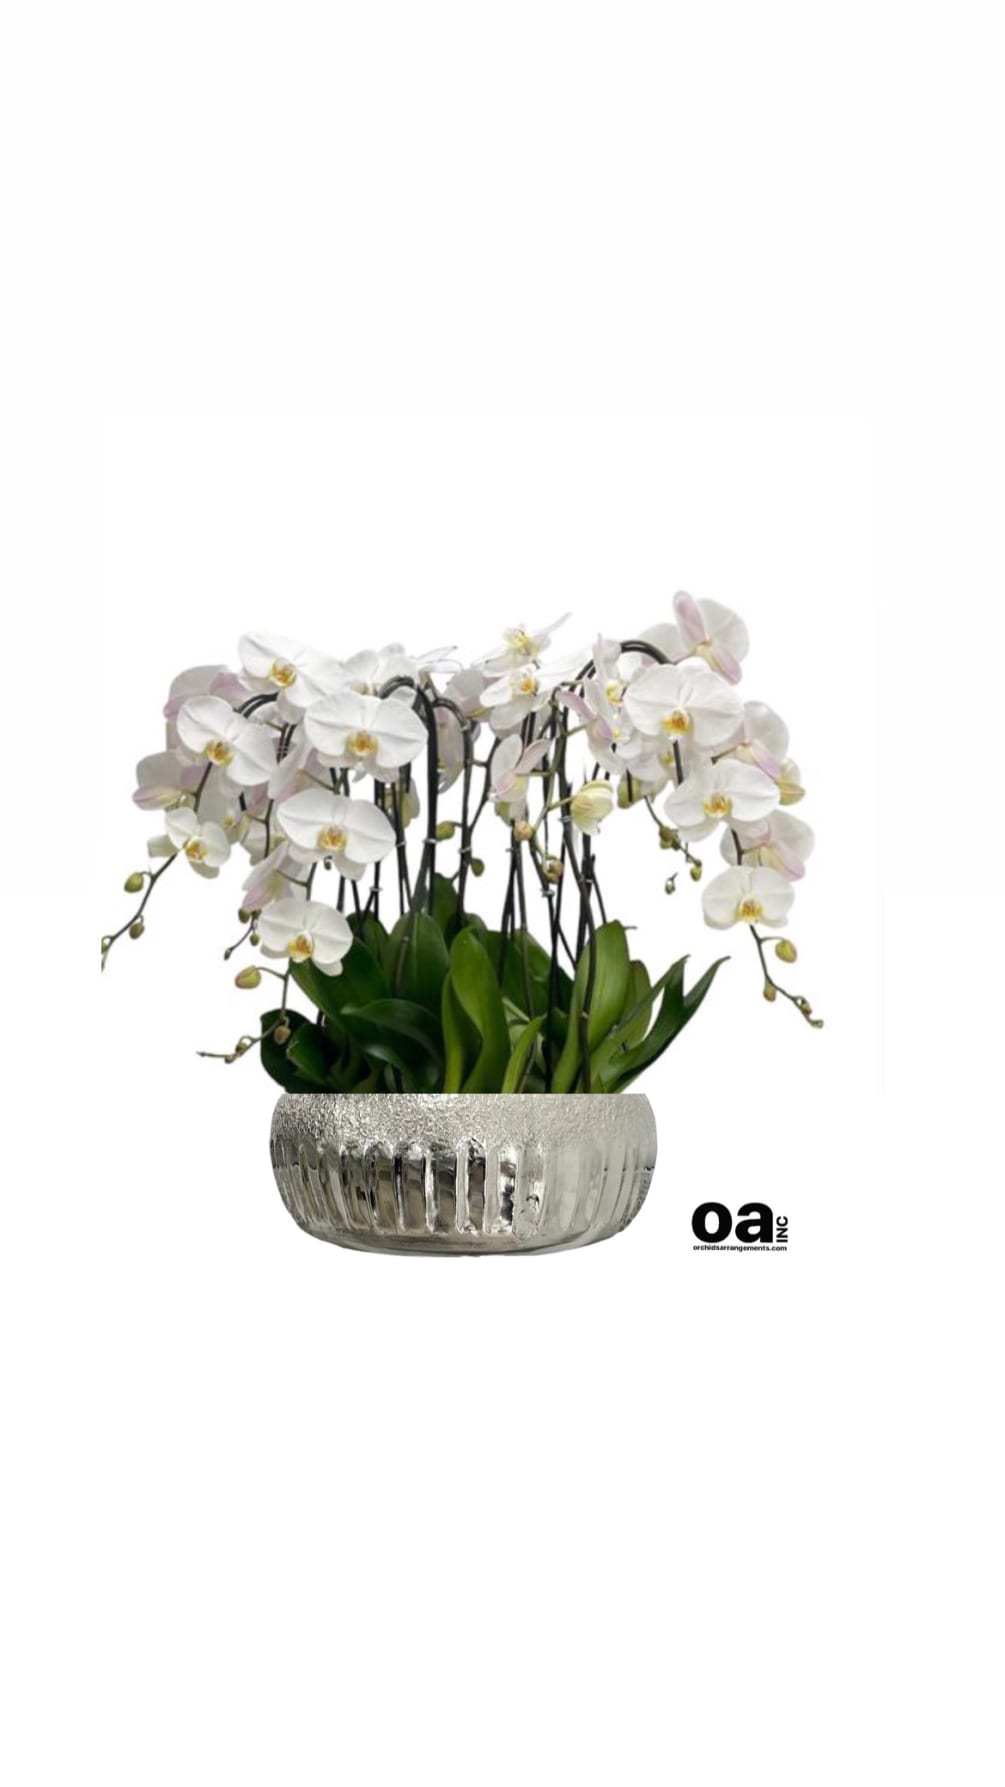 Sunny Isles Beach bouquet orchids
10 white orchids flowers 14&quot; D x 6.5&quot;